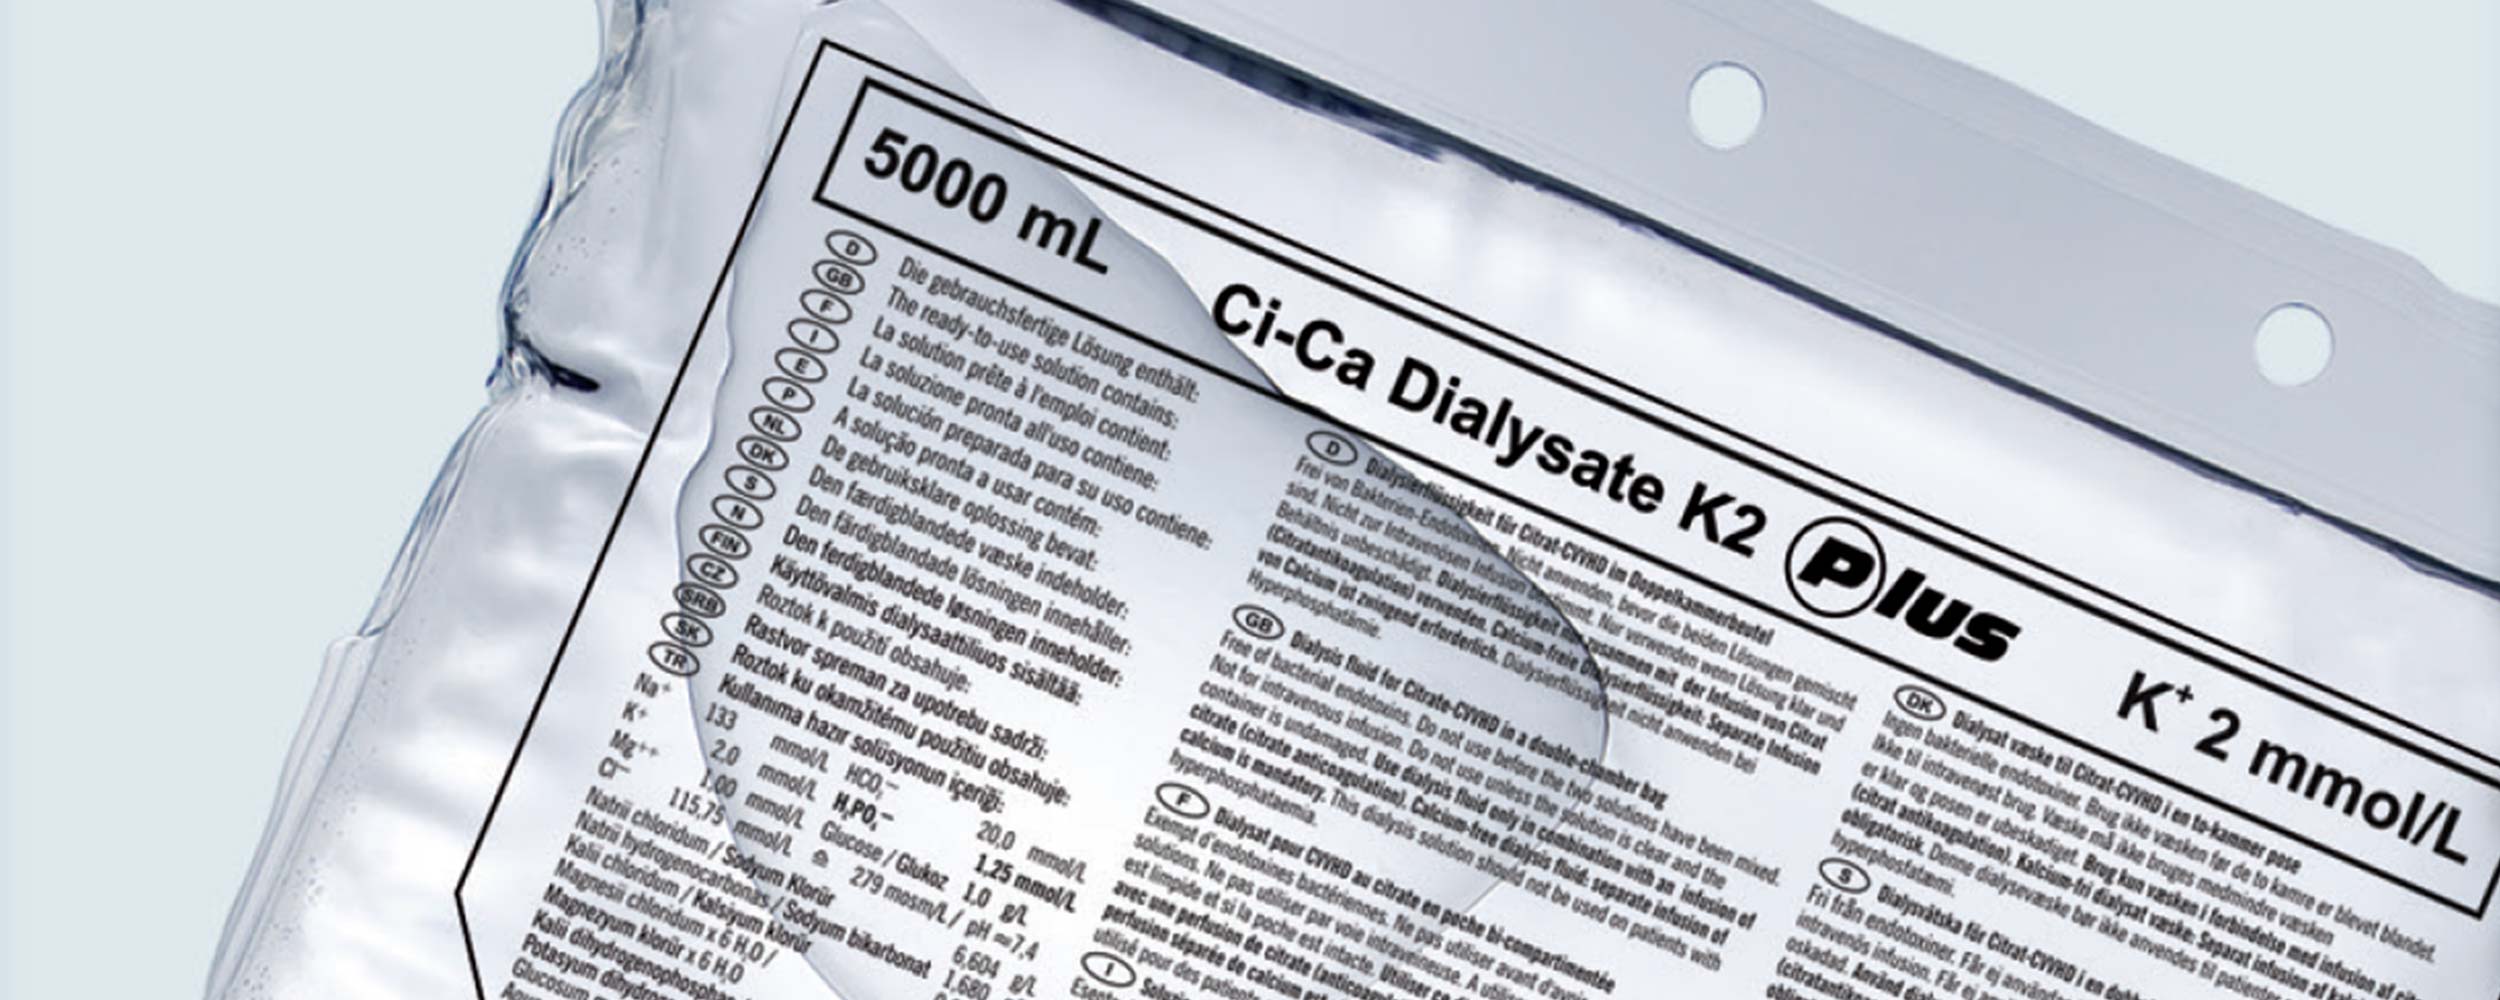 Мішок із розчином Ci-Ca® Dialysate Plus